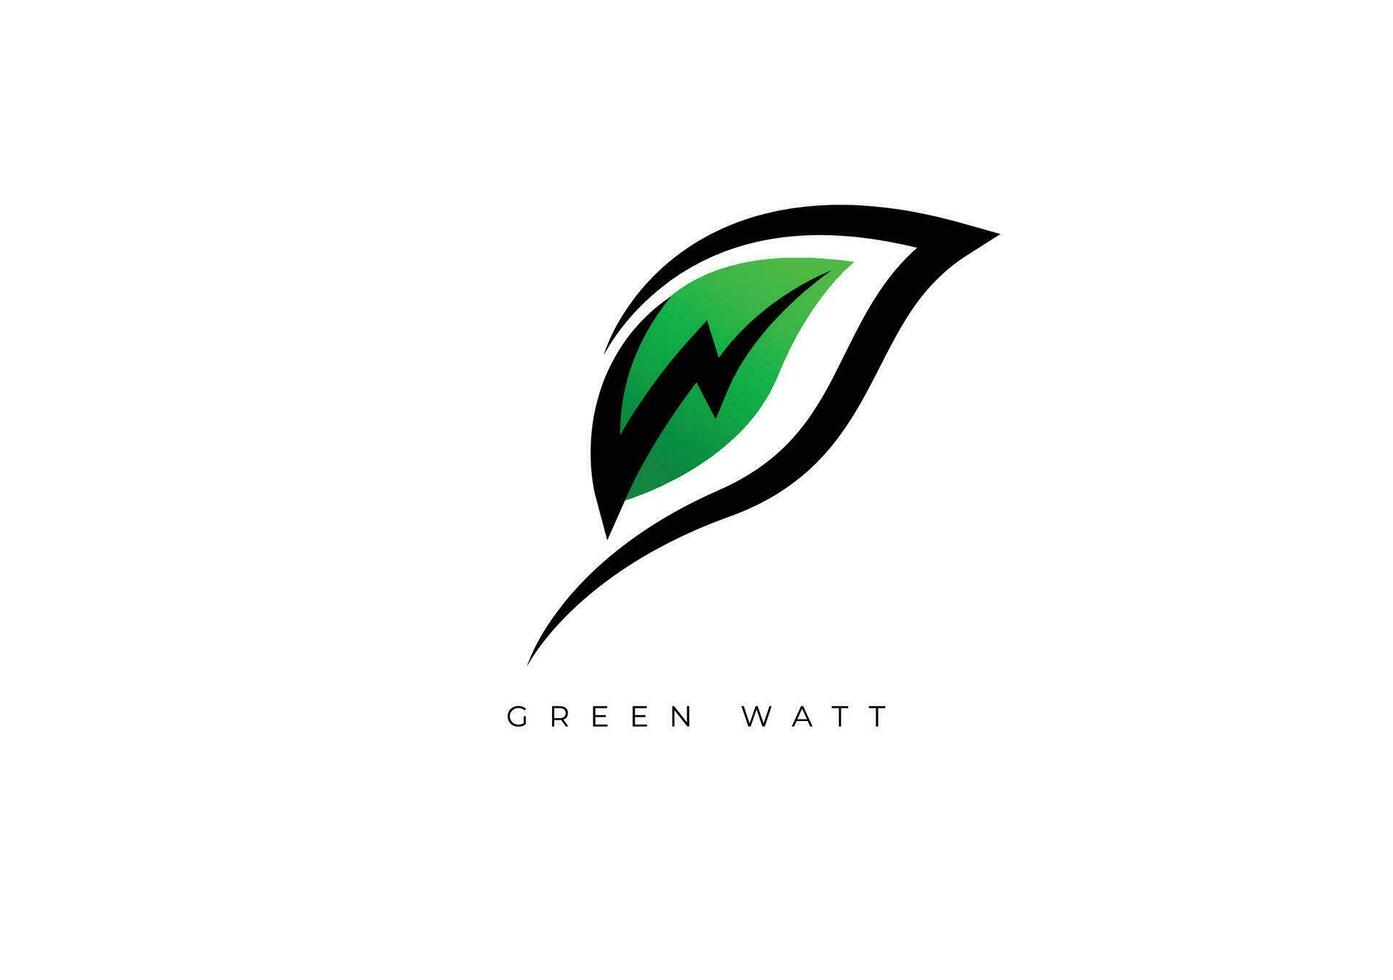 GREEN WATT LOGO vector